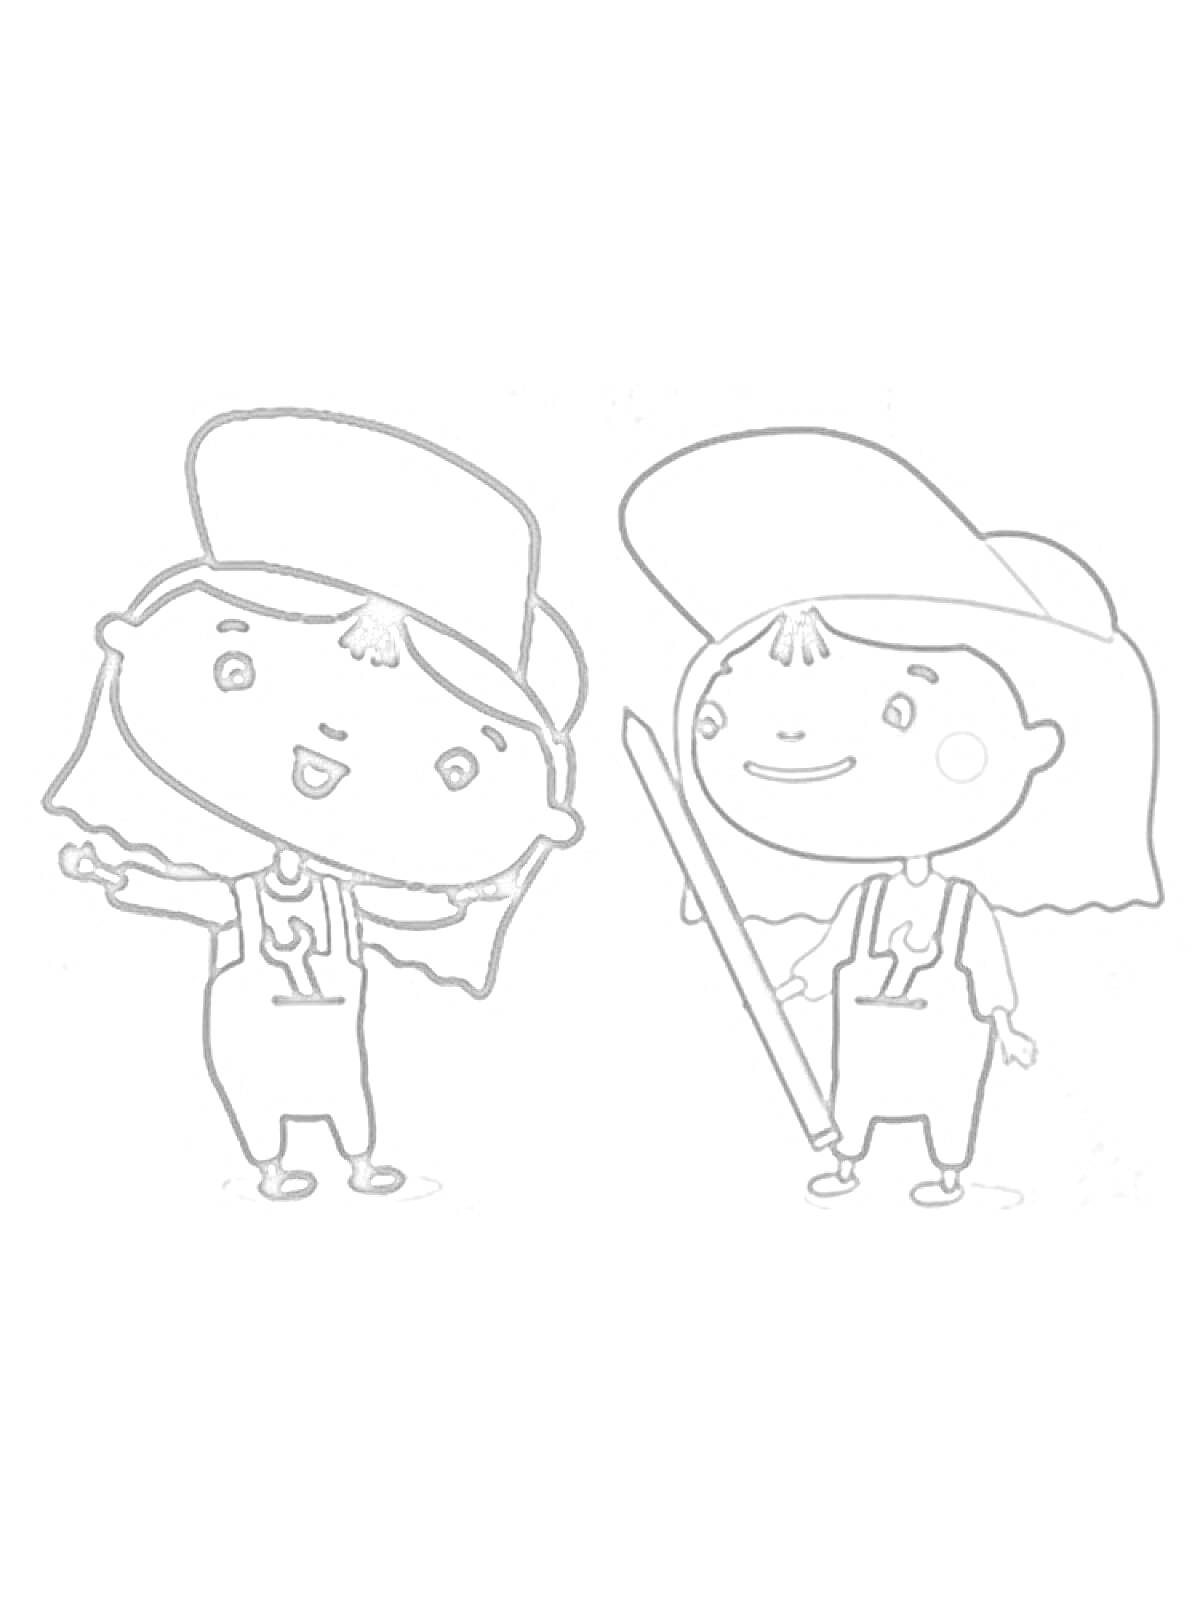 Две девочки в кепках и комбинезонах, одна держит палку